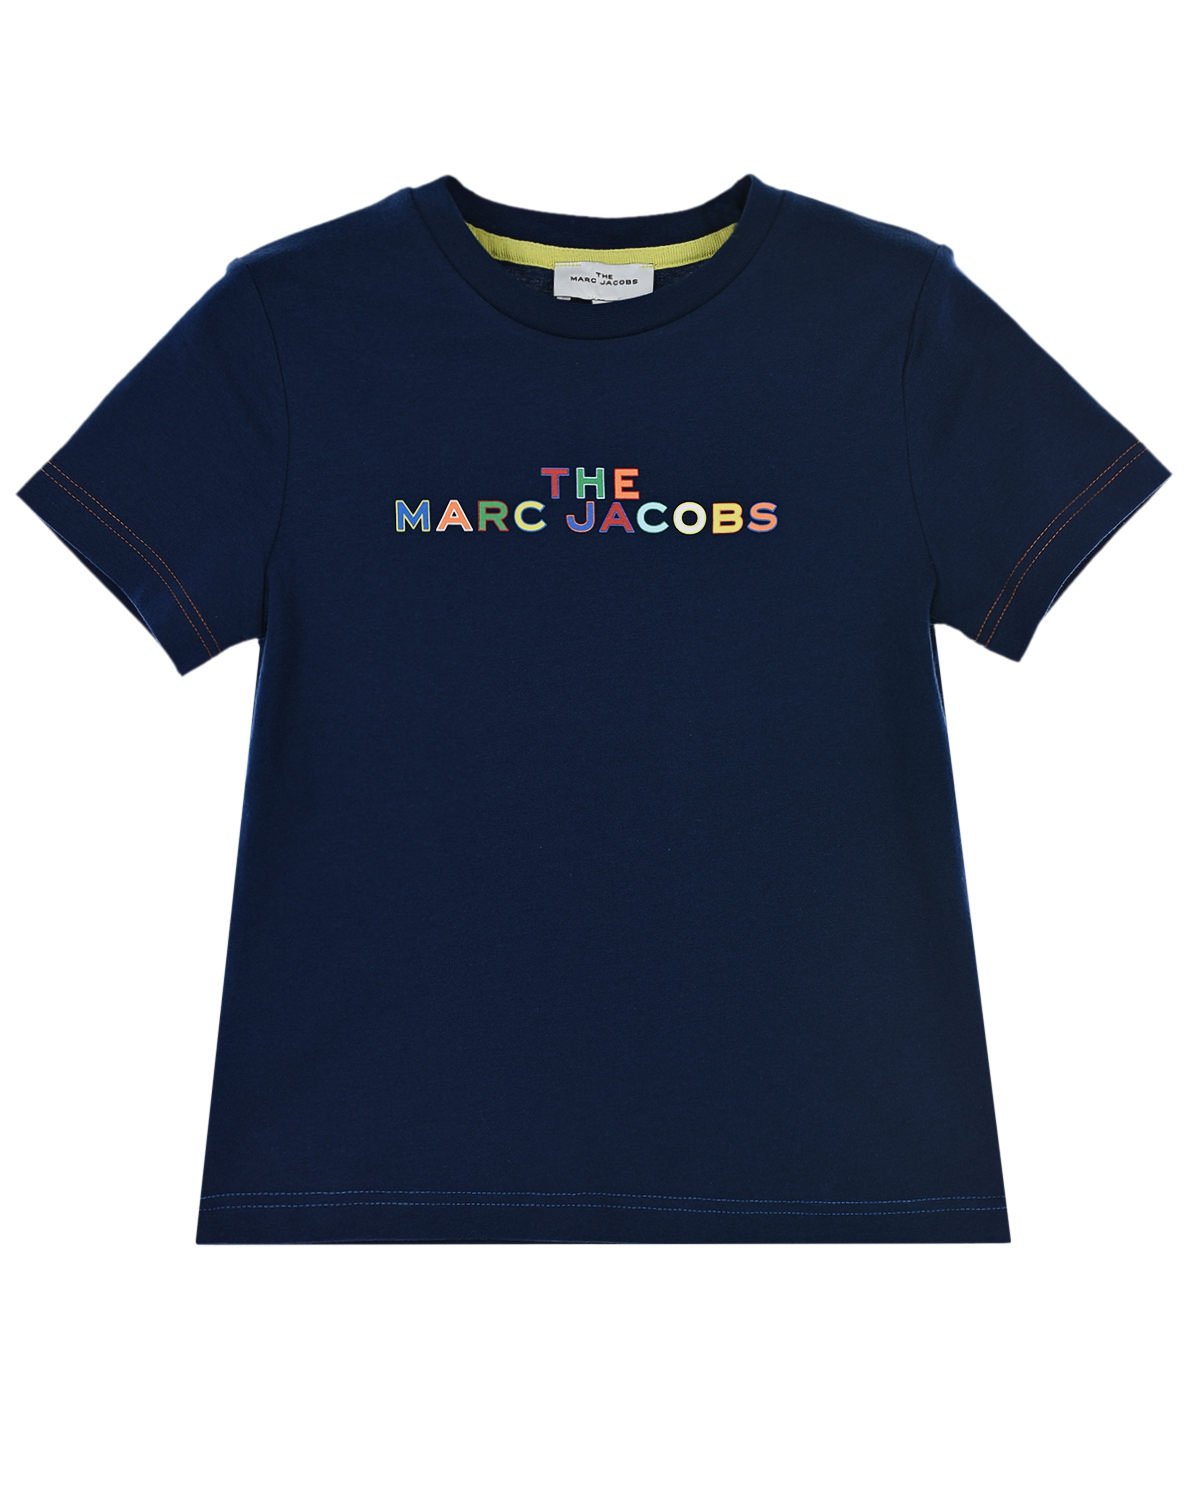 Футболка с разноцветным логотипом The Marc Jacobs детская, размер 104 - фото 1